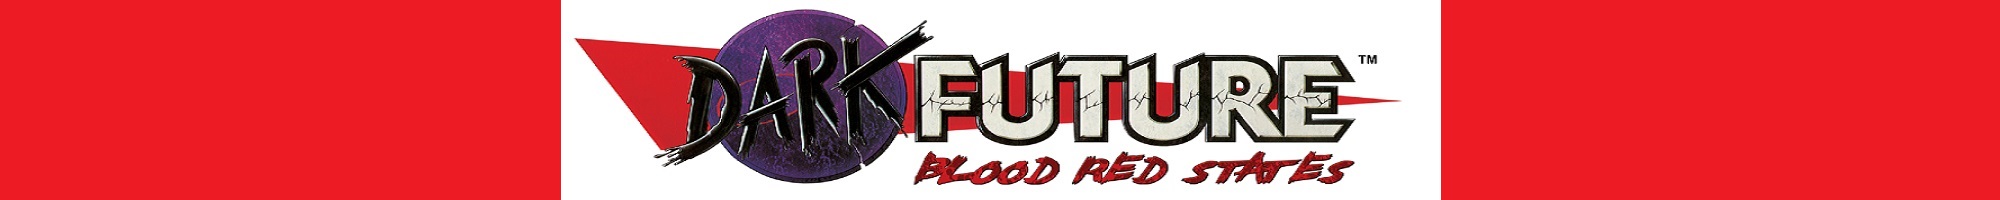 Dark Future Blood Red States banner